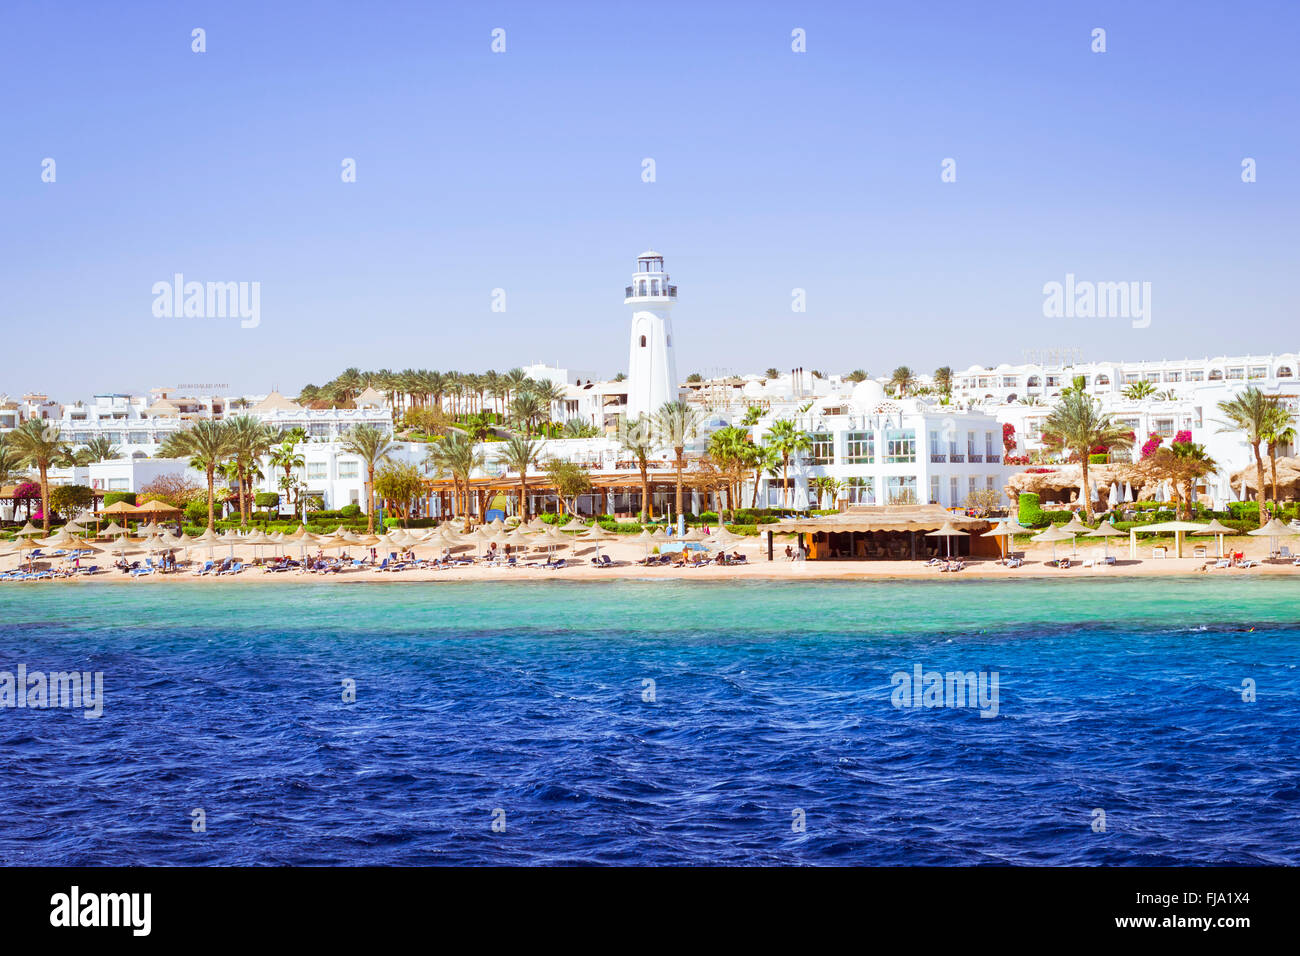 SHARM EL SHEIKH, Egitto - 25 febbraio 2014: faro costiero e hotel sulla spiaggia, vacanza di lusso per i turisti in Mar Rosso Foto Stock